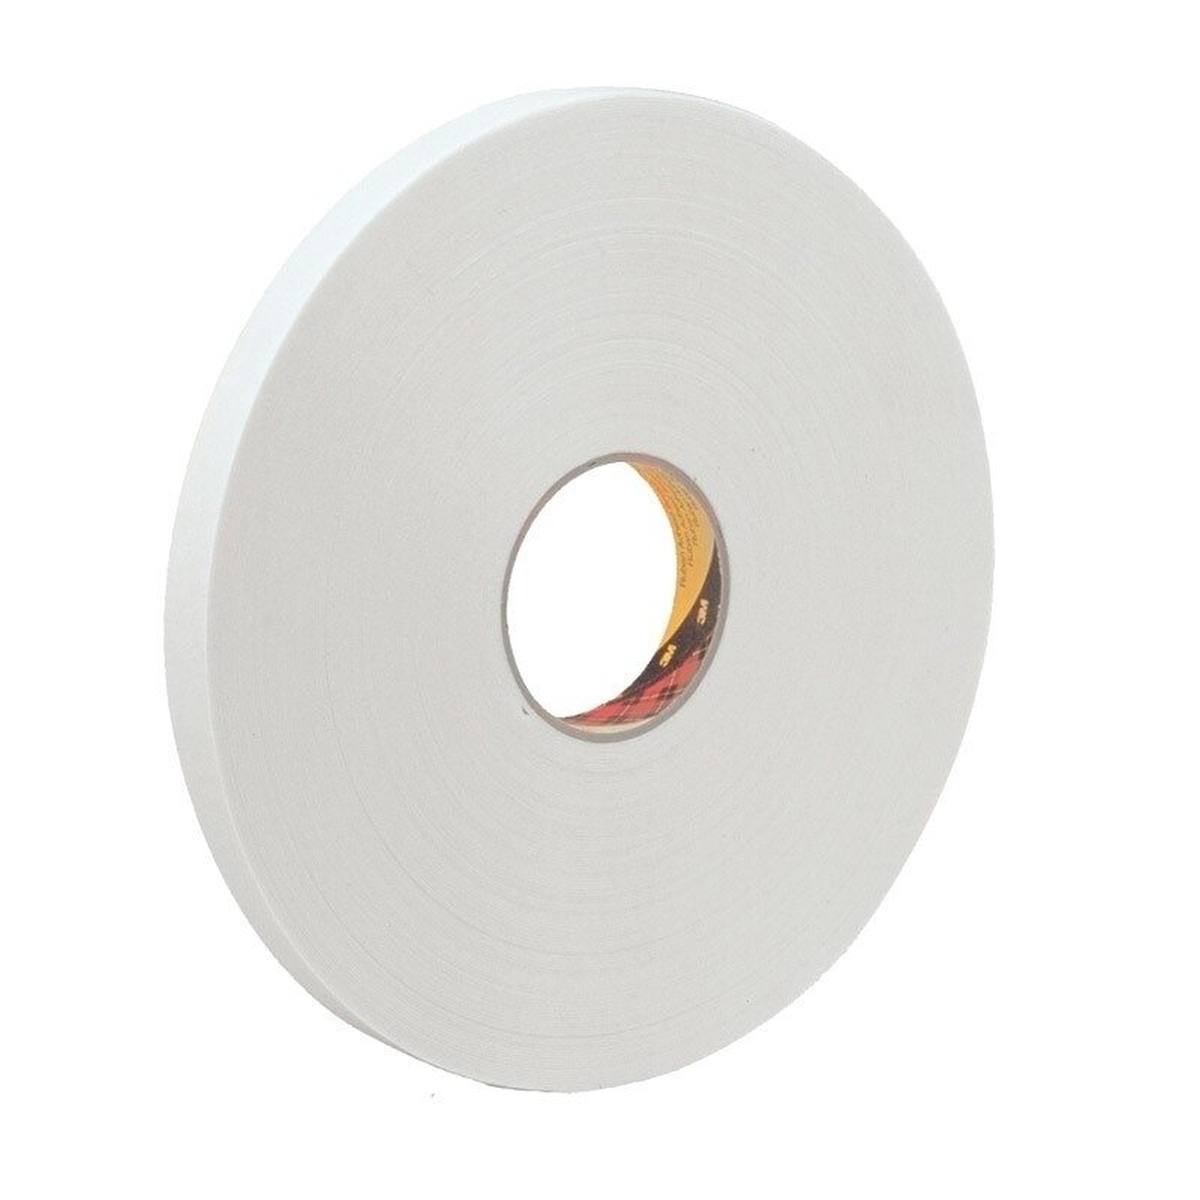 3M ruban adhésif mousse PE avec adhésif acrylique 9539, blanc, 6 mm x 66 m, 0,8 mm